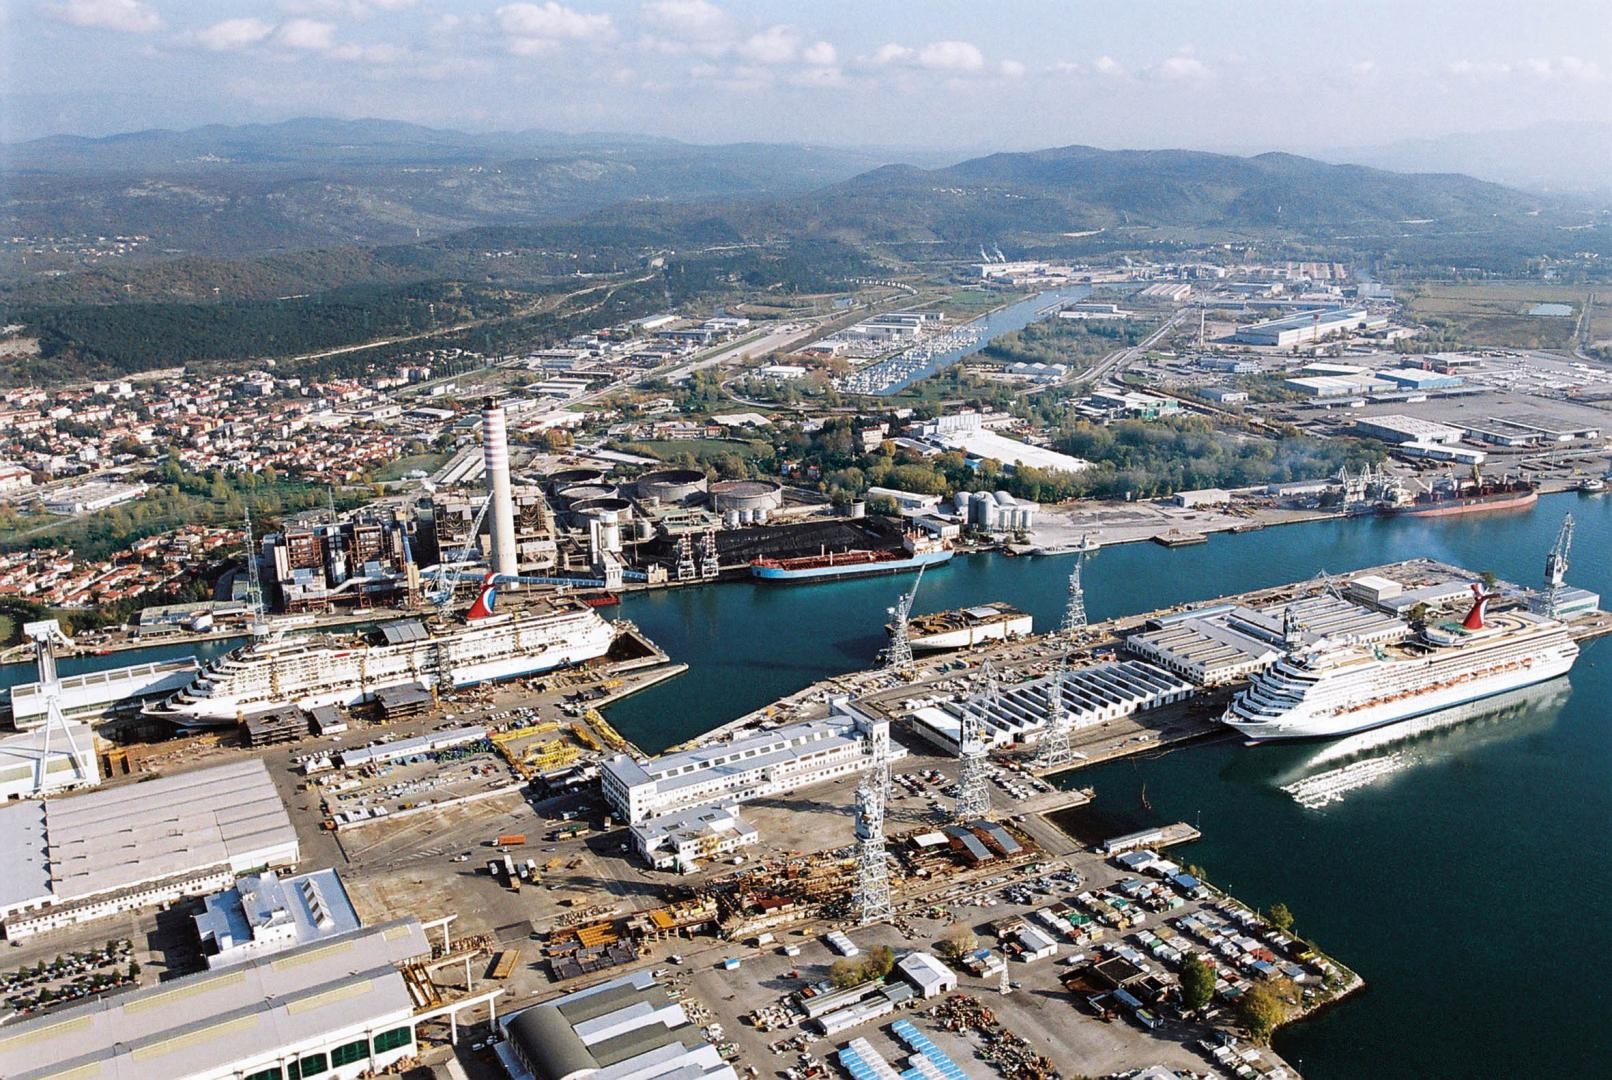 Fincantieri ha firmato con Princess Cruises di Carnival Corporation & plc un Memorandum of Agreement per la costruzione di 2 navi da crociera